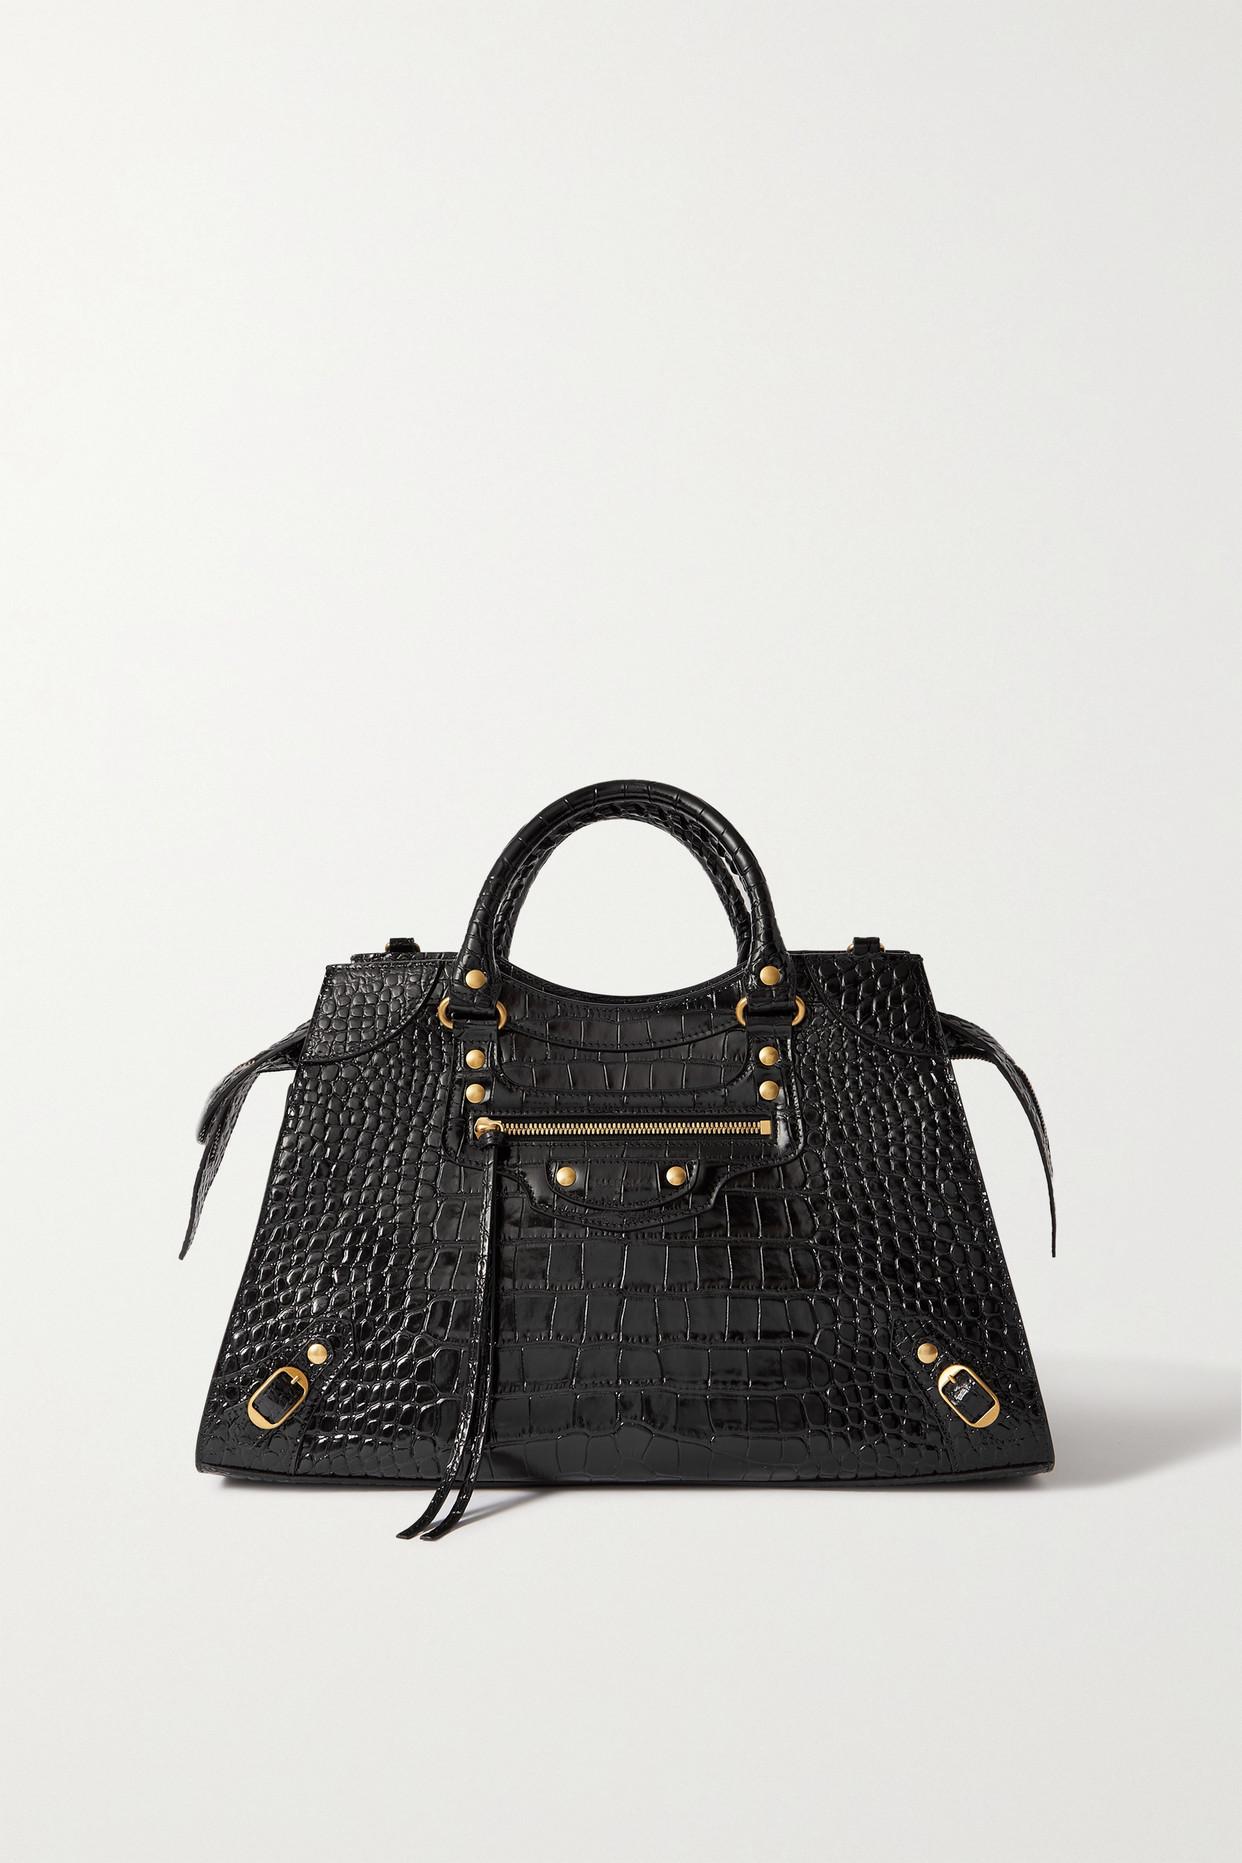 Balenciaga Black Crocodile Weekender Bag